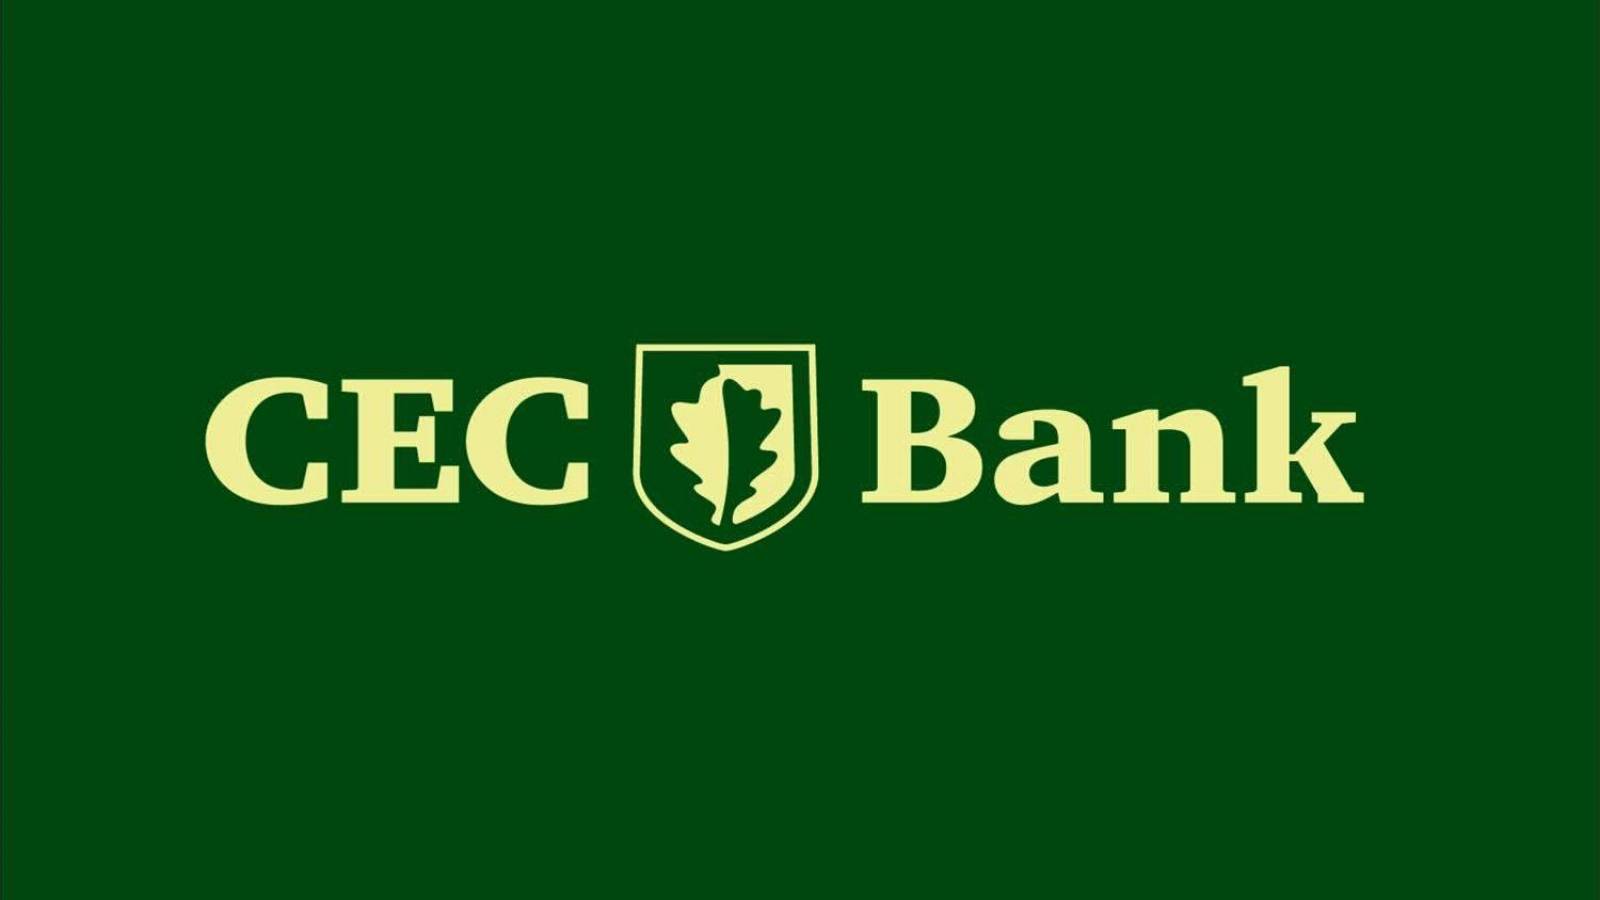 CEC Bank actualizare